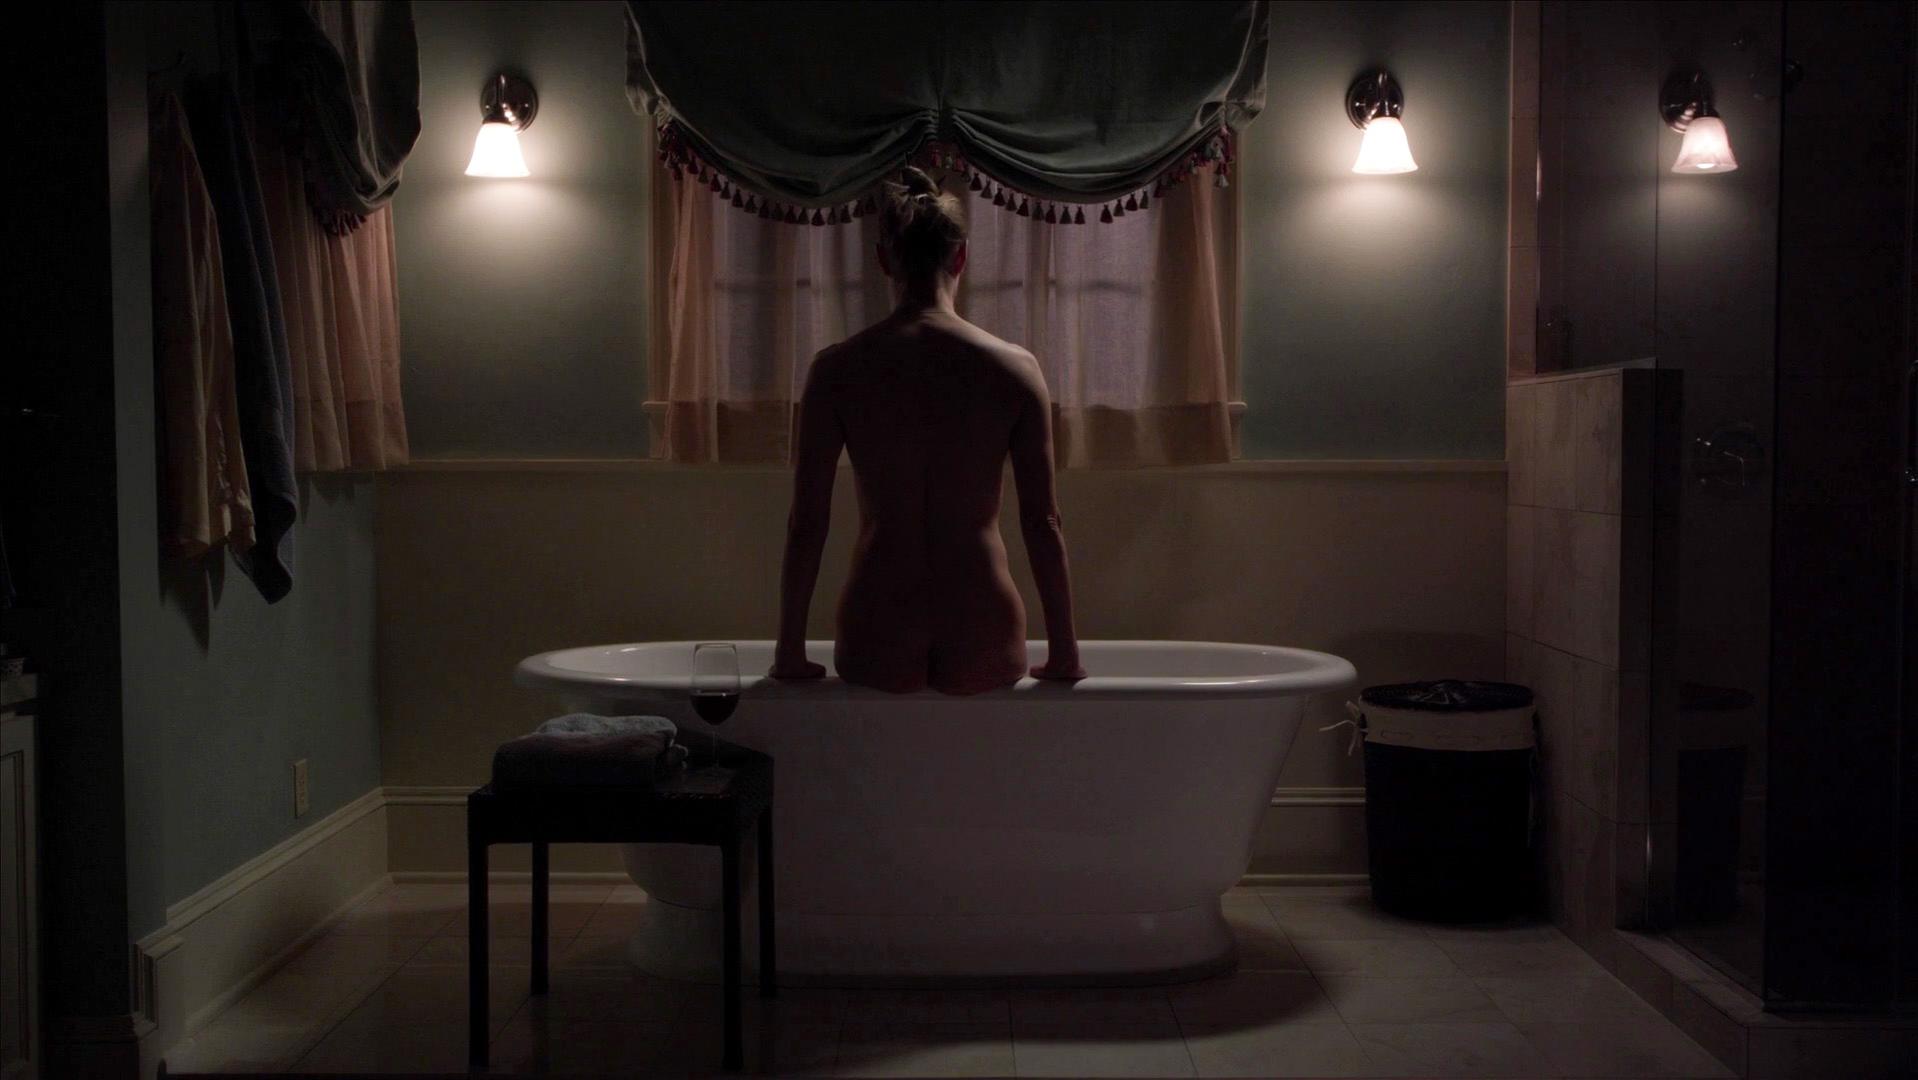 Nude Video Celebs Ivana Milicevic Nude Banshee S01e04